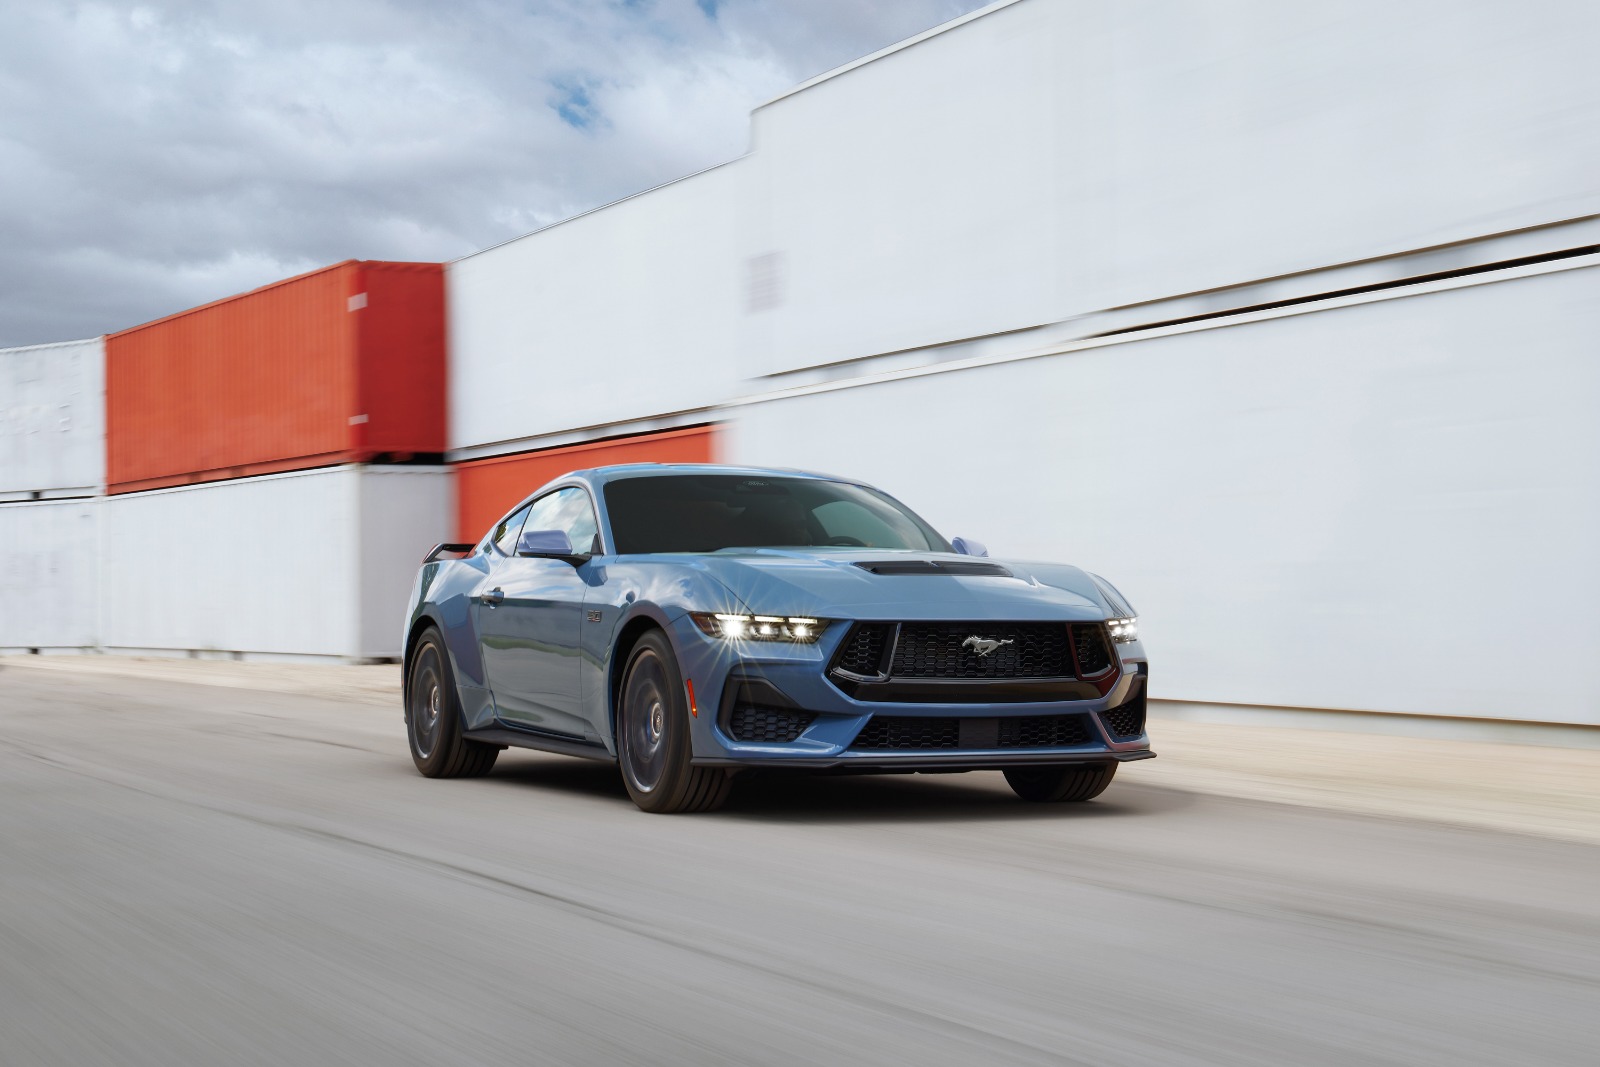 Dirigimos a sétima geração do Mustang GT Performance que está mais potente